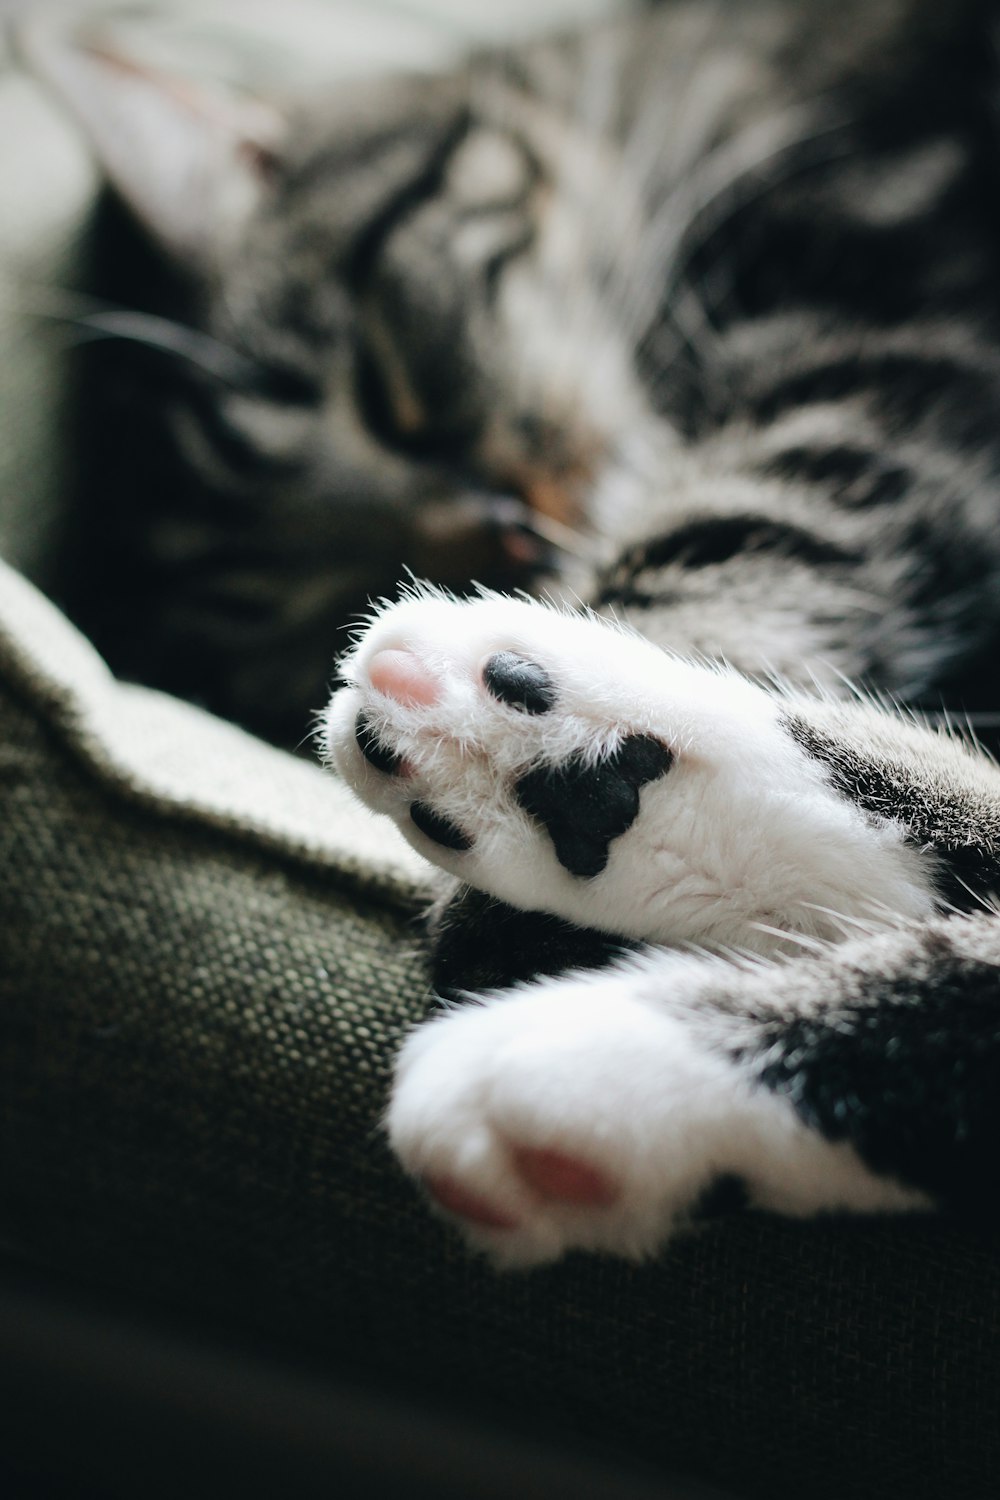 fotografia ravvicinata di zampa di gatto soriano bianca e nera